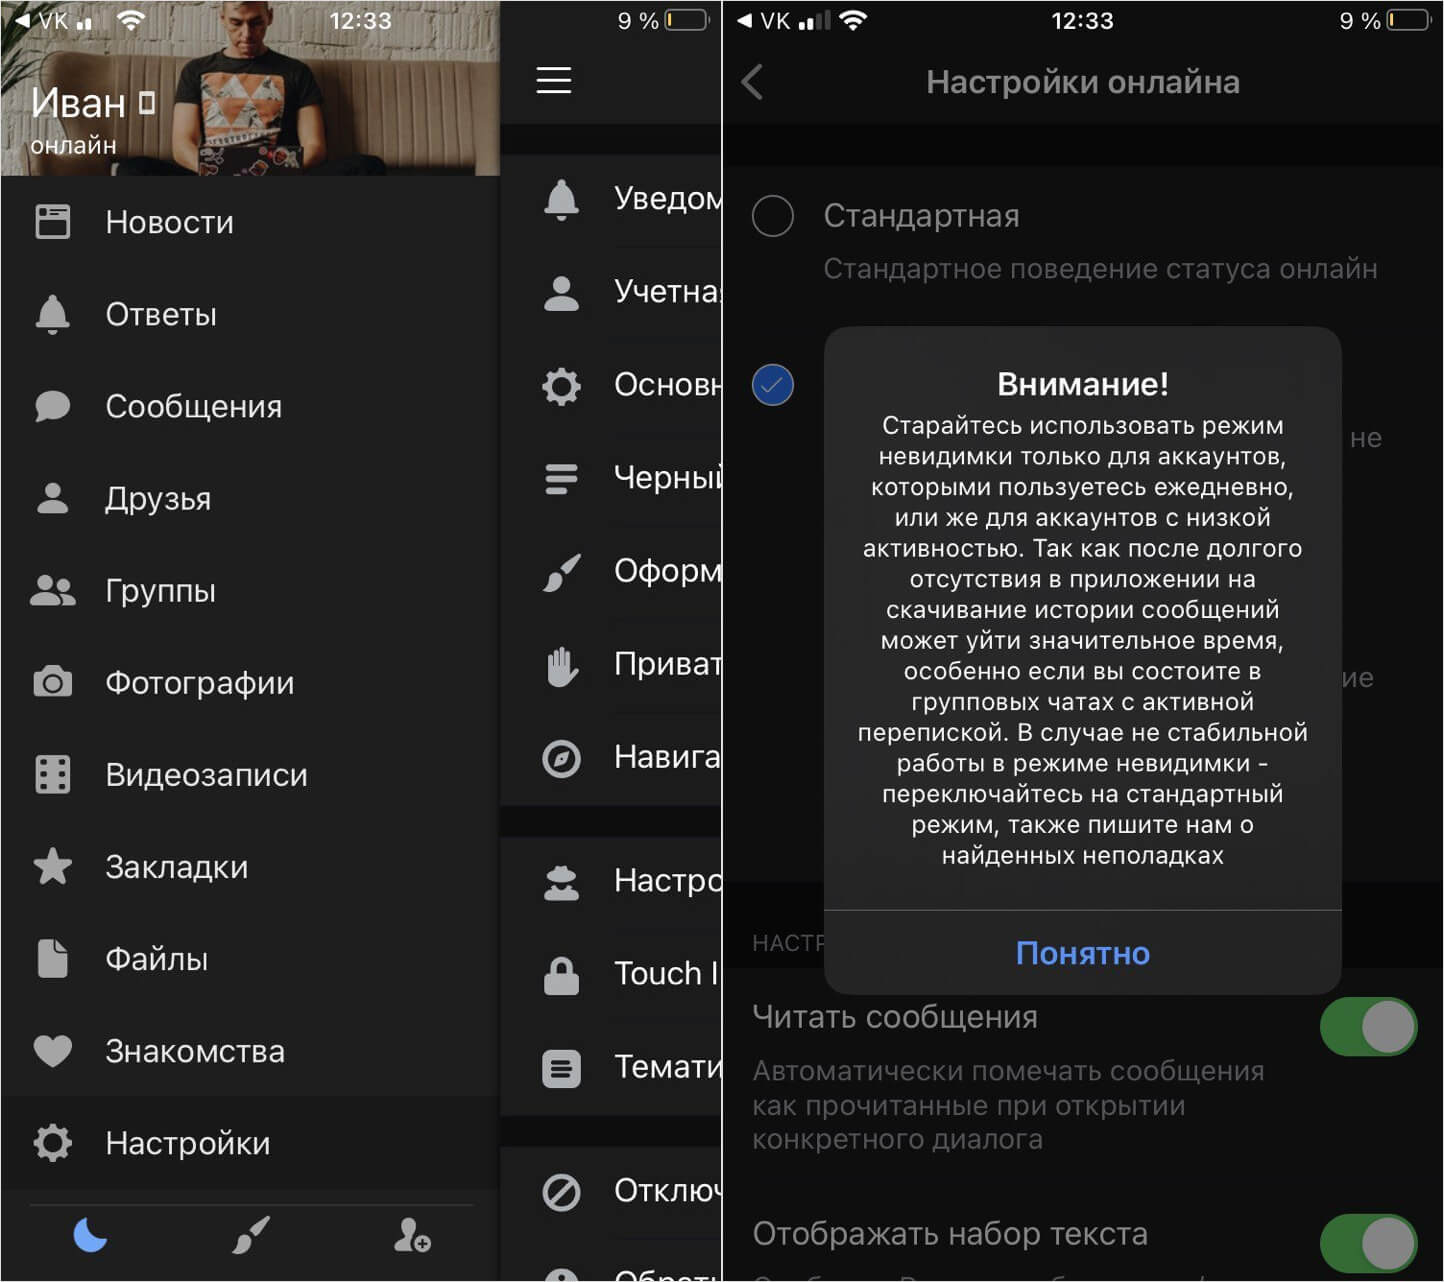 ТОП-5 бесплатных сторонних клиентов ВКонтакте для Айфона